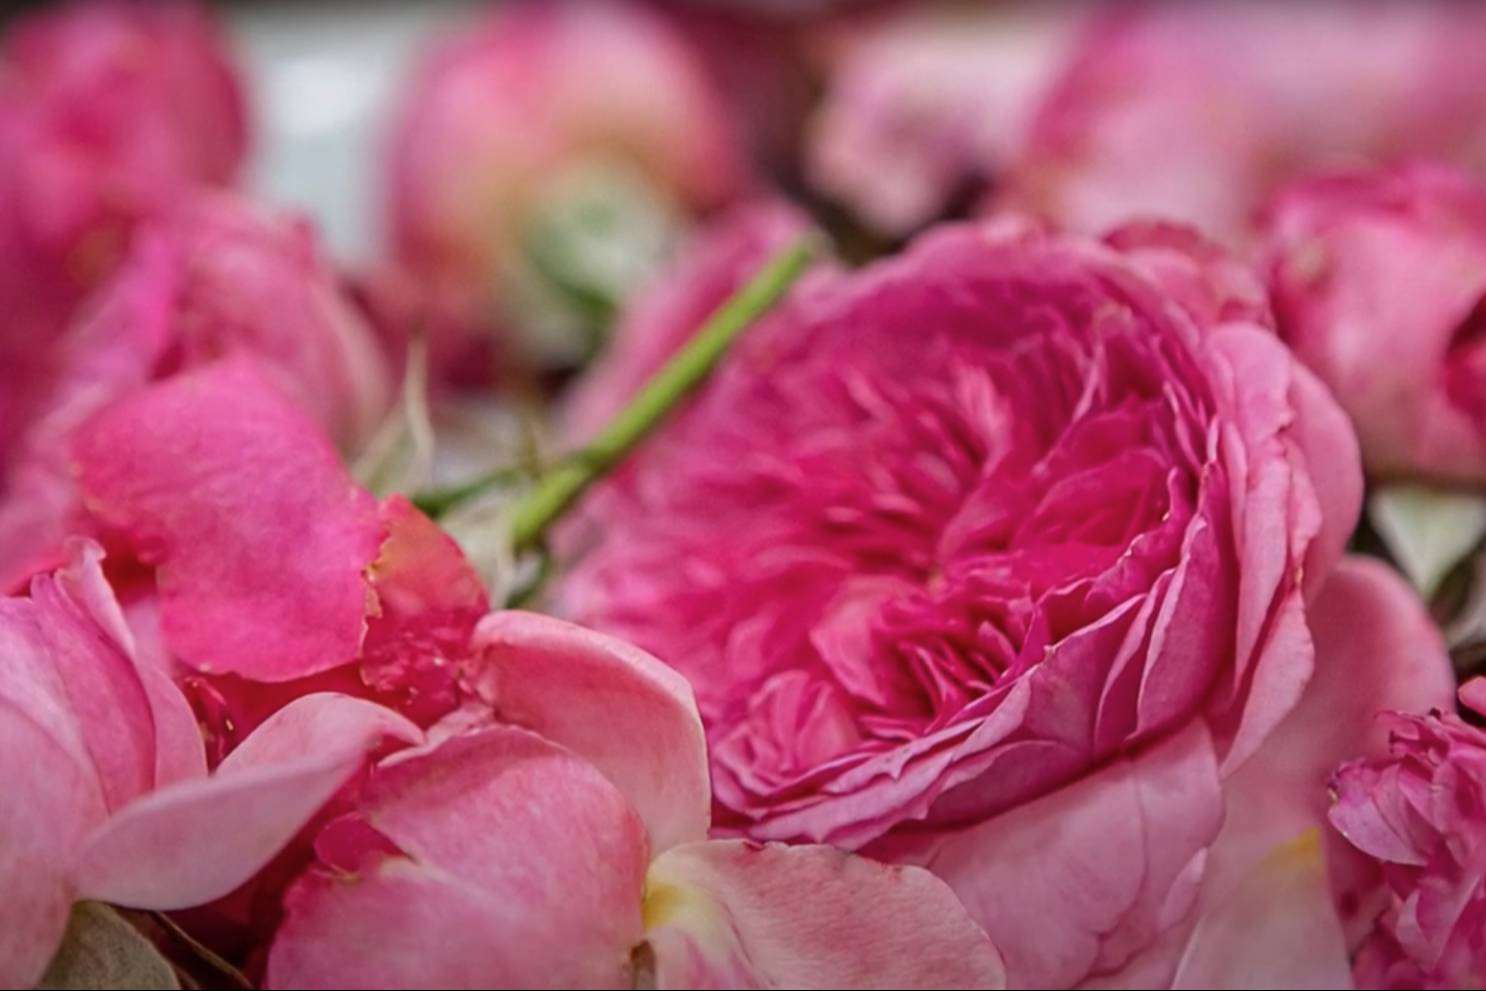 El rosal comestible de Rachel & Co como alternativa en el Día del Libro y de la Rosa